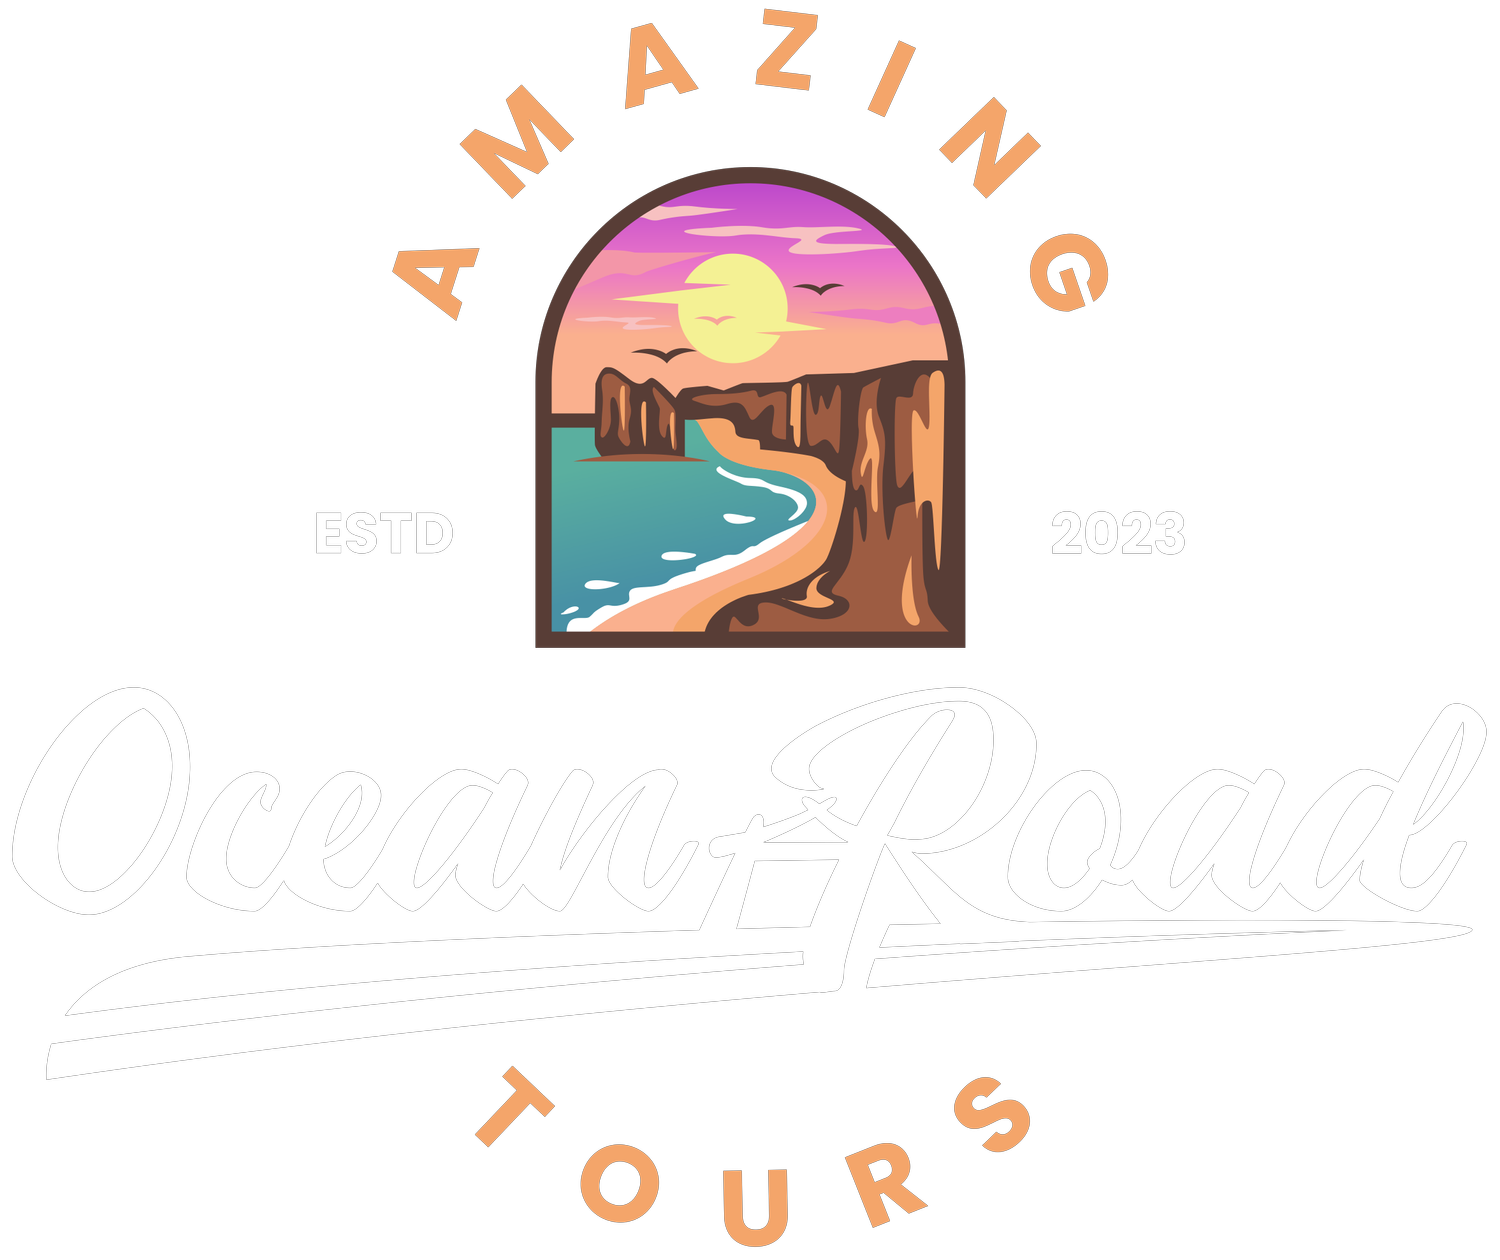 Amazing Ocean Road Tours